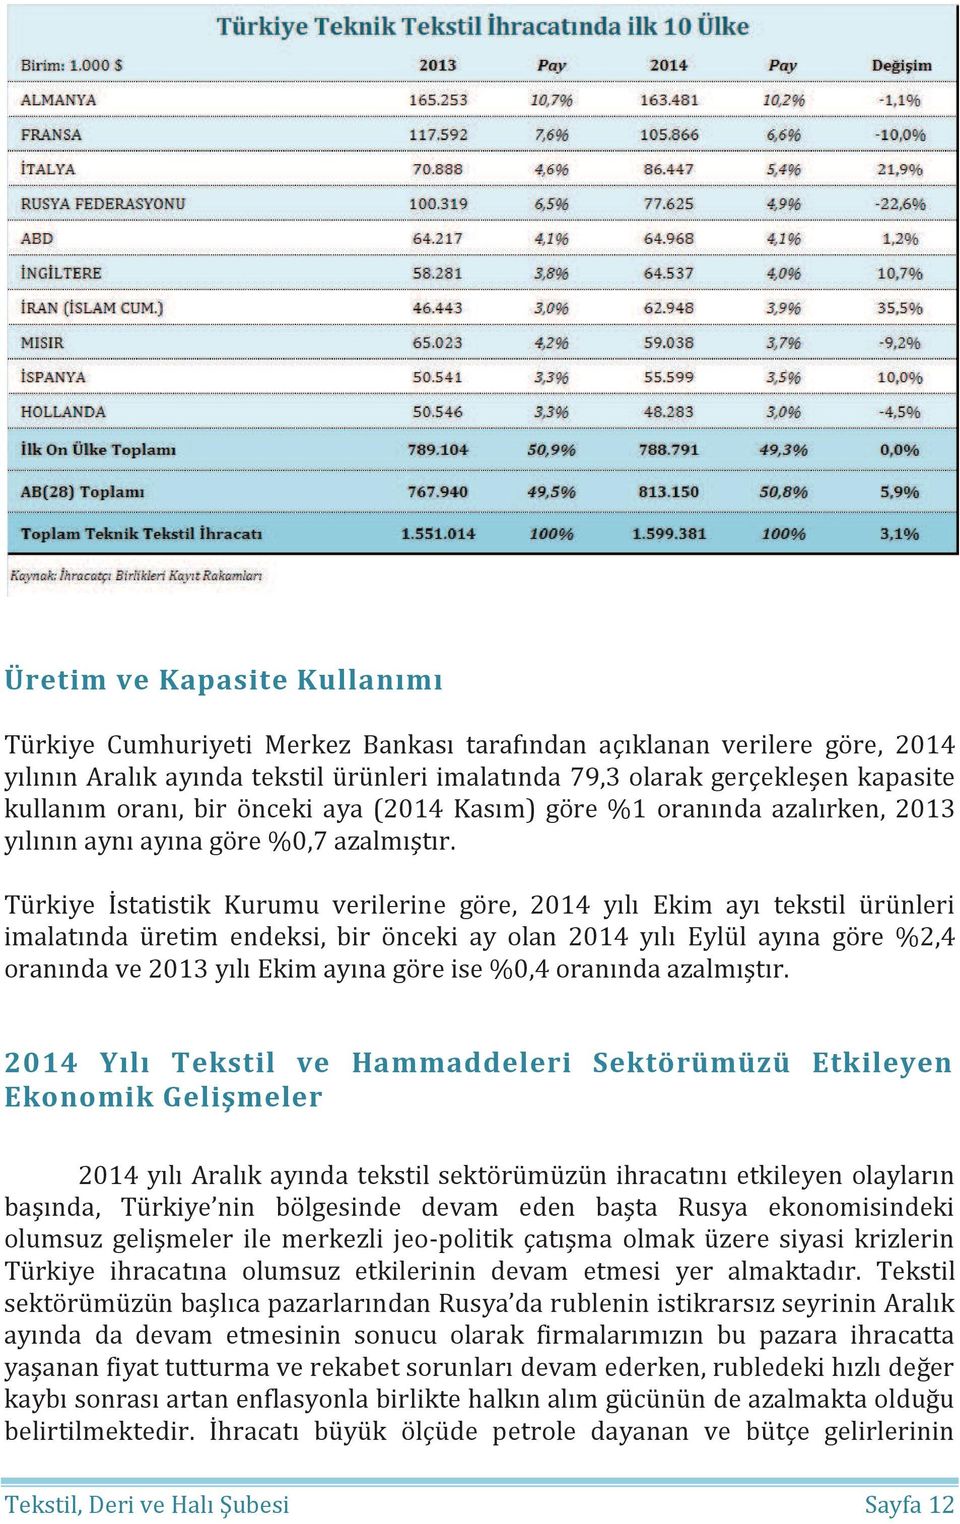 Türkiye İstatistik Kurumu verilerine göre, 2014 yılı Ekim ayı tekstil ürünleri imalatında üretim endeksi, bir önceki ay olan 2014 yılı Eylül ayına göre %2,4 oranında ve 2013 yılı Ekim ayına göre ise